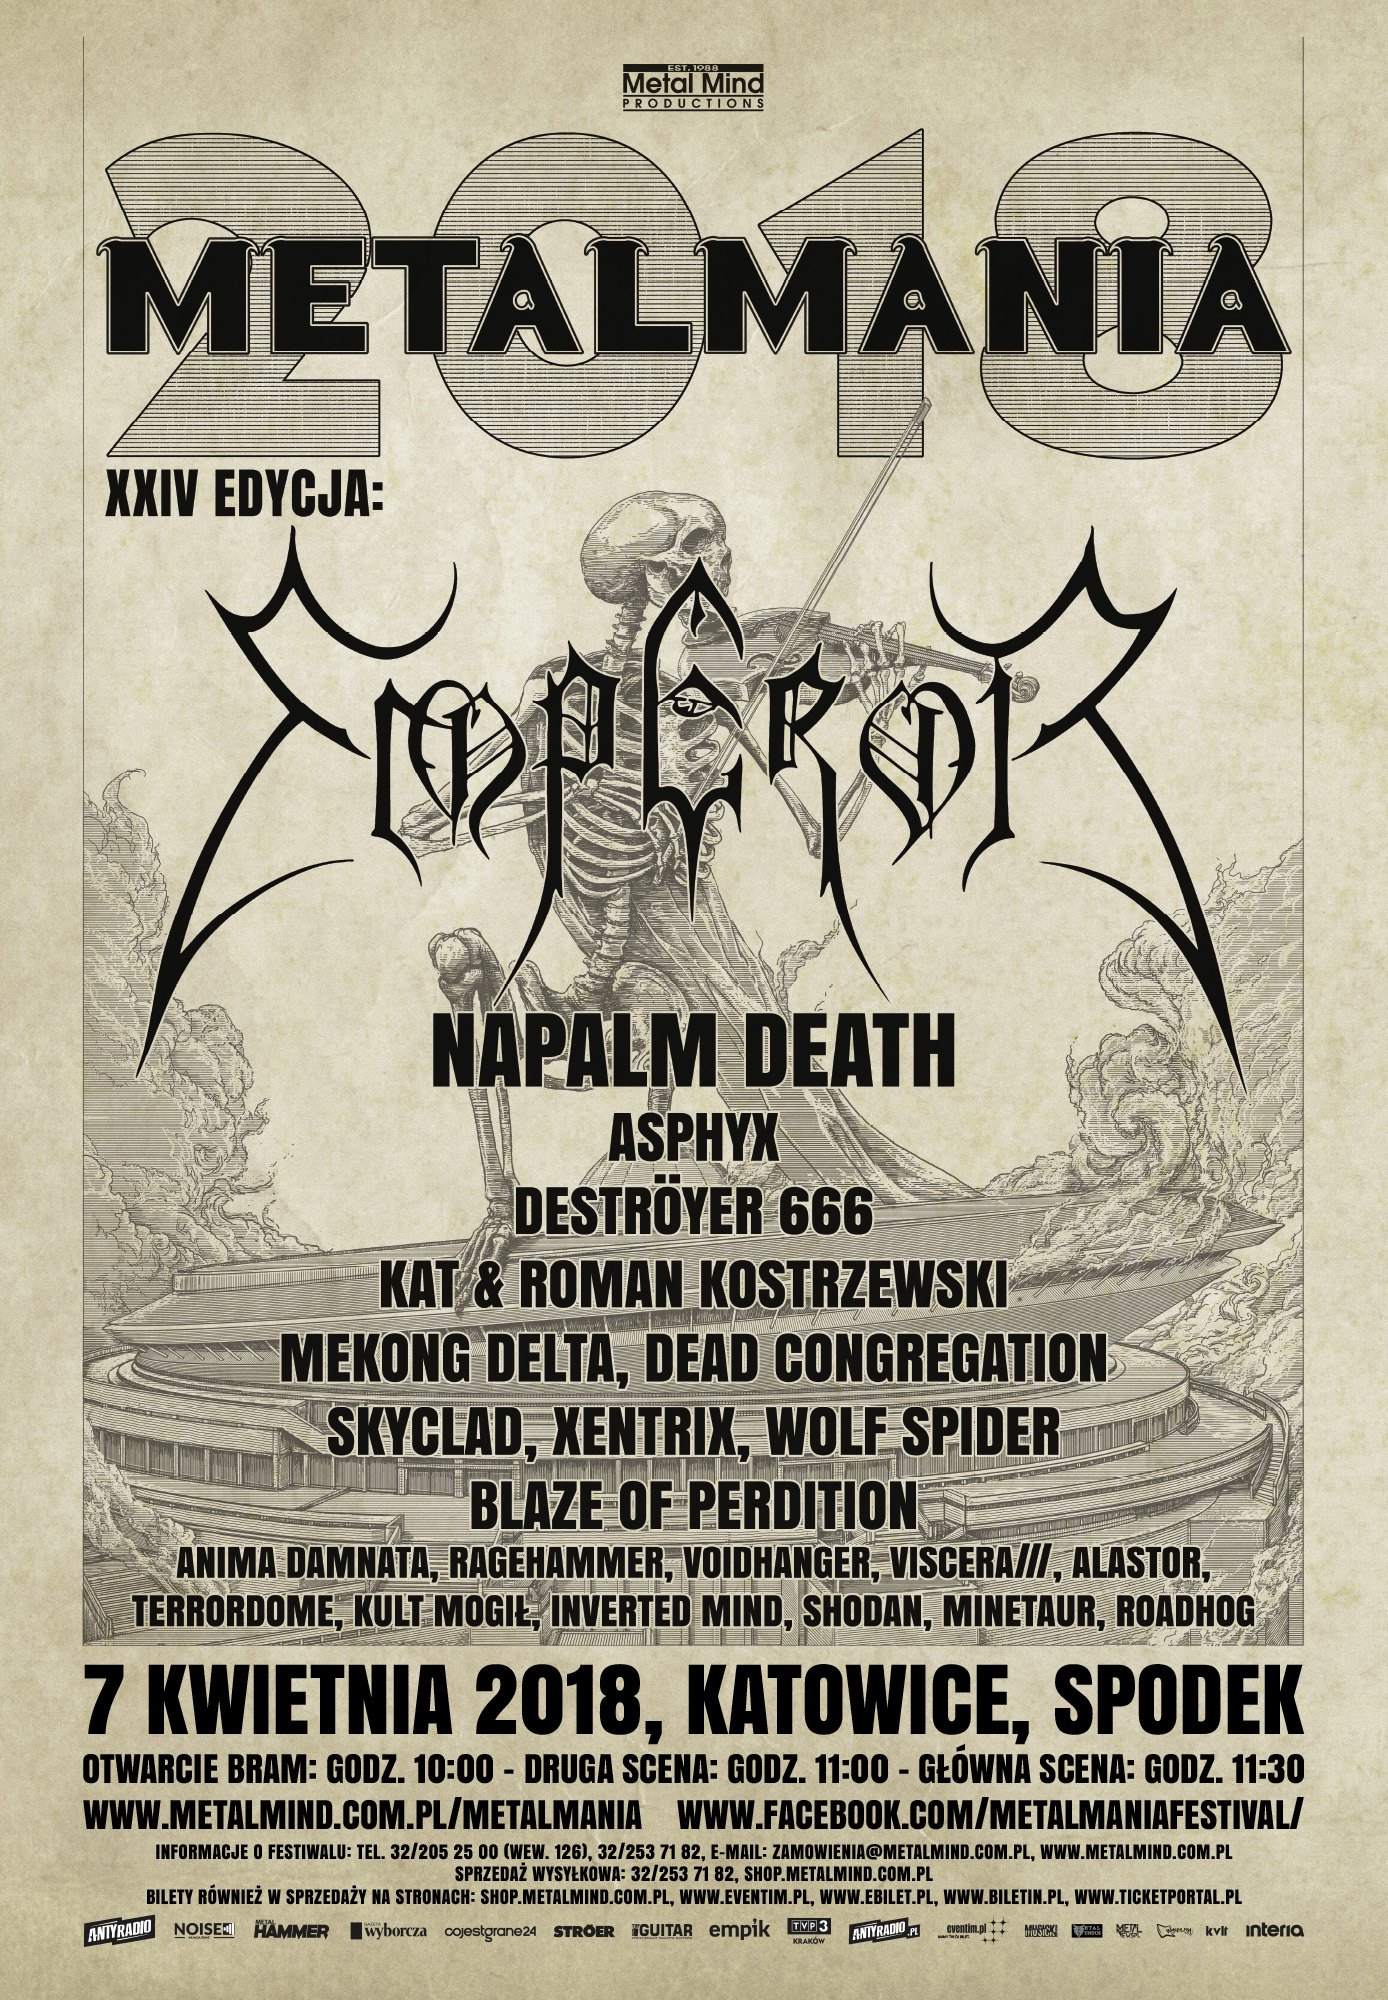 Metalmania 2018 - kolejne szczegóły festiwalu!